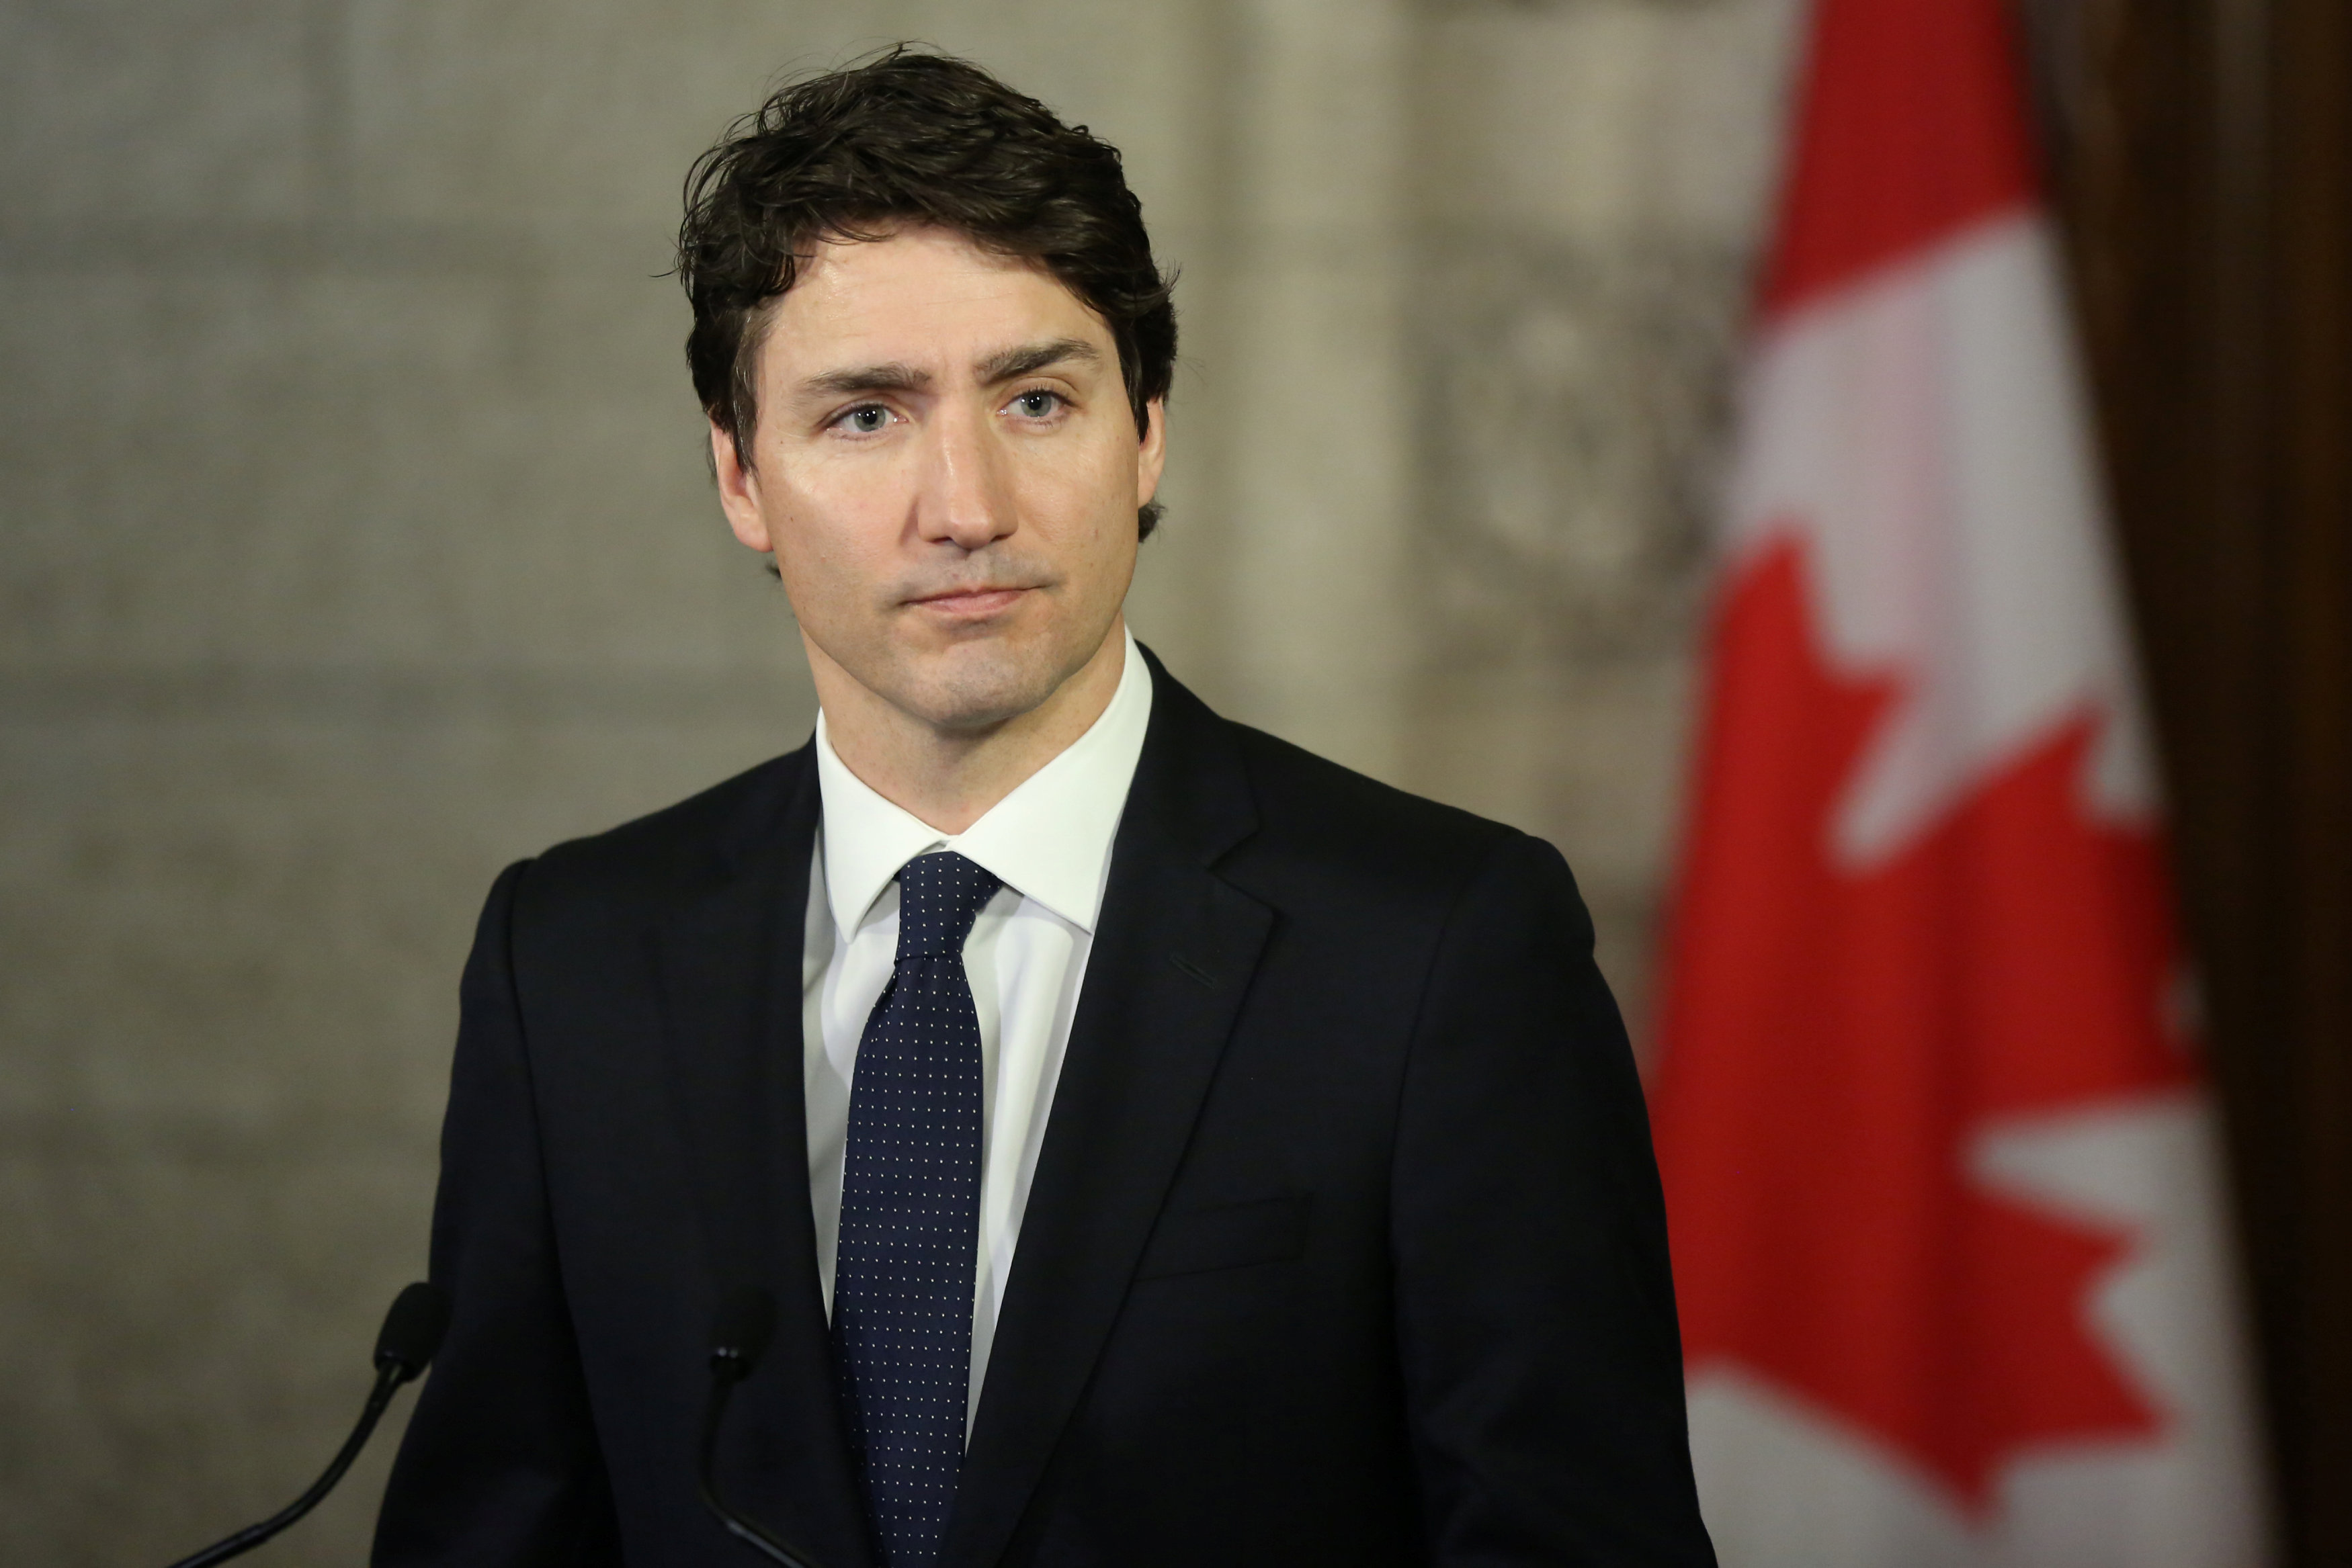 Primer ministro canadiense descarta que atropello fuese un acto terrorista